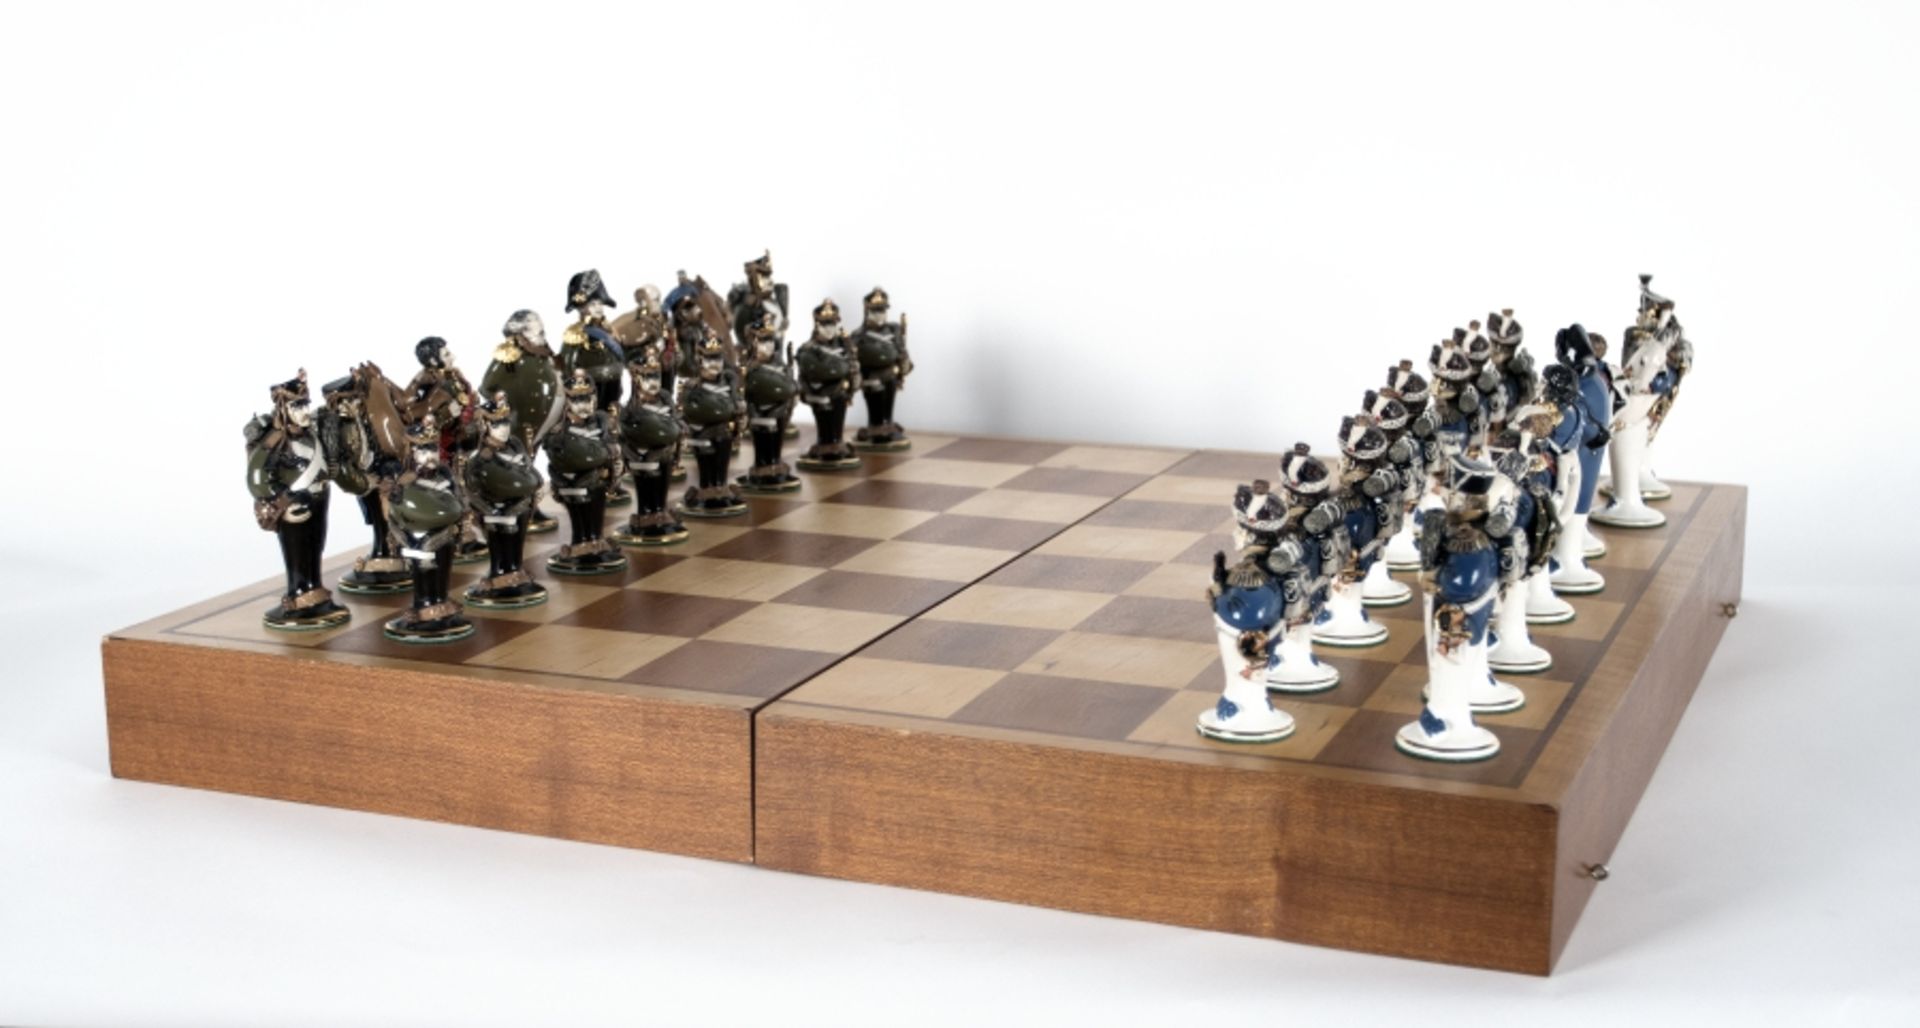 Golovko, Studio Leonid: Schachspiel "Die Schlacht bei Borodino"